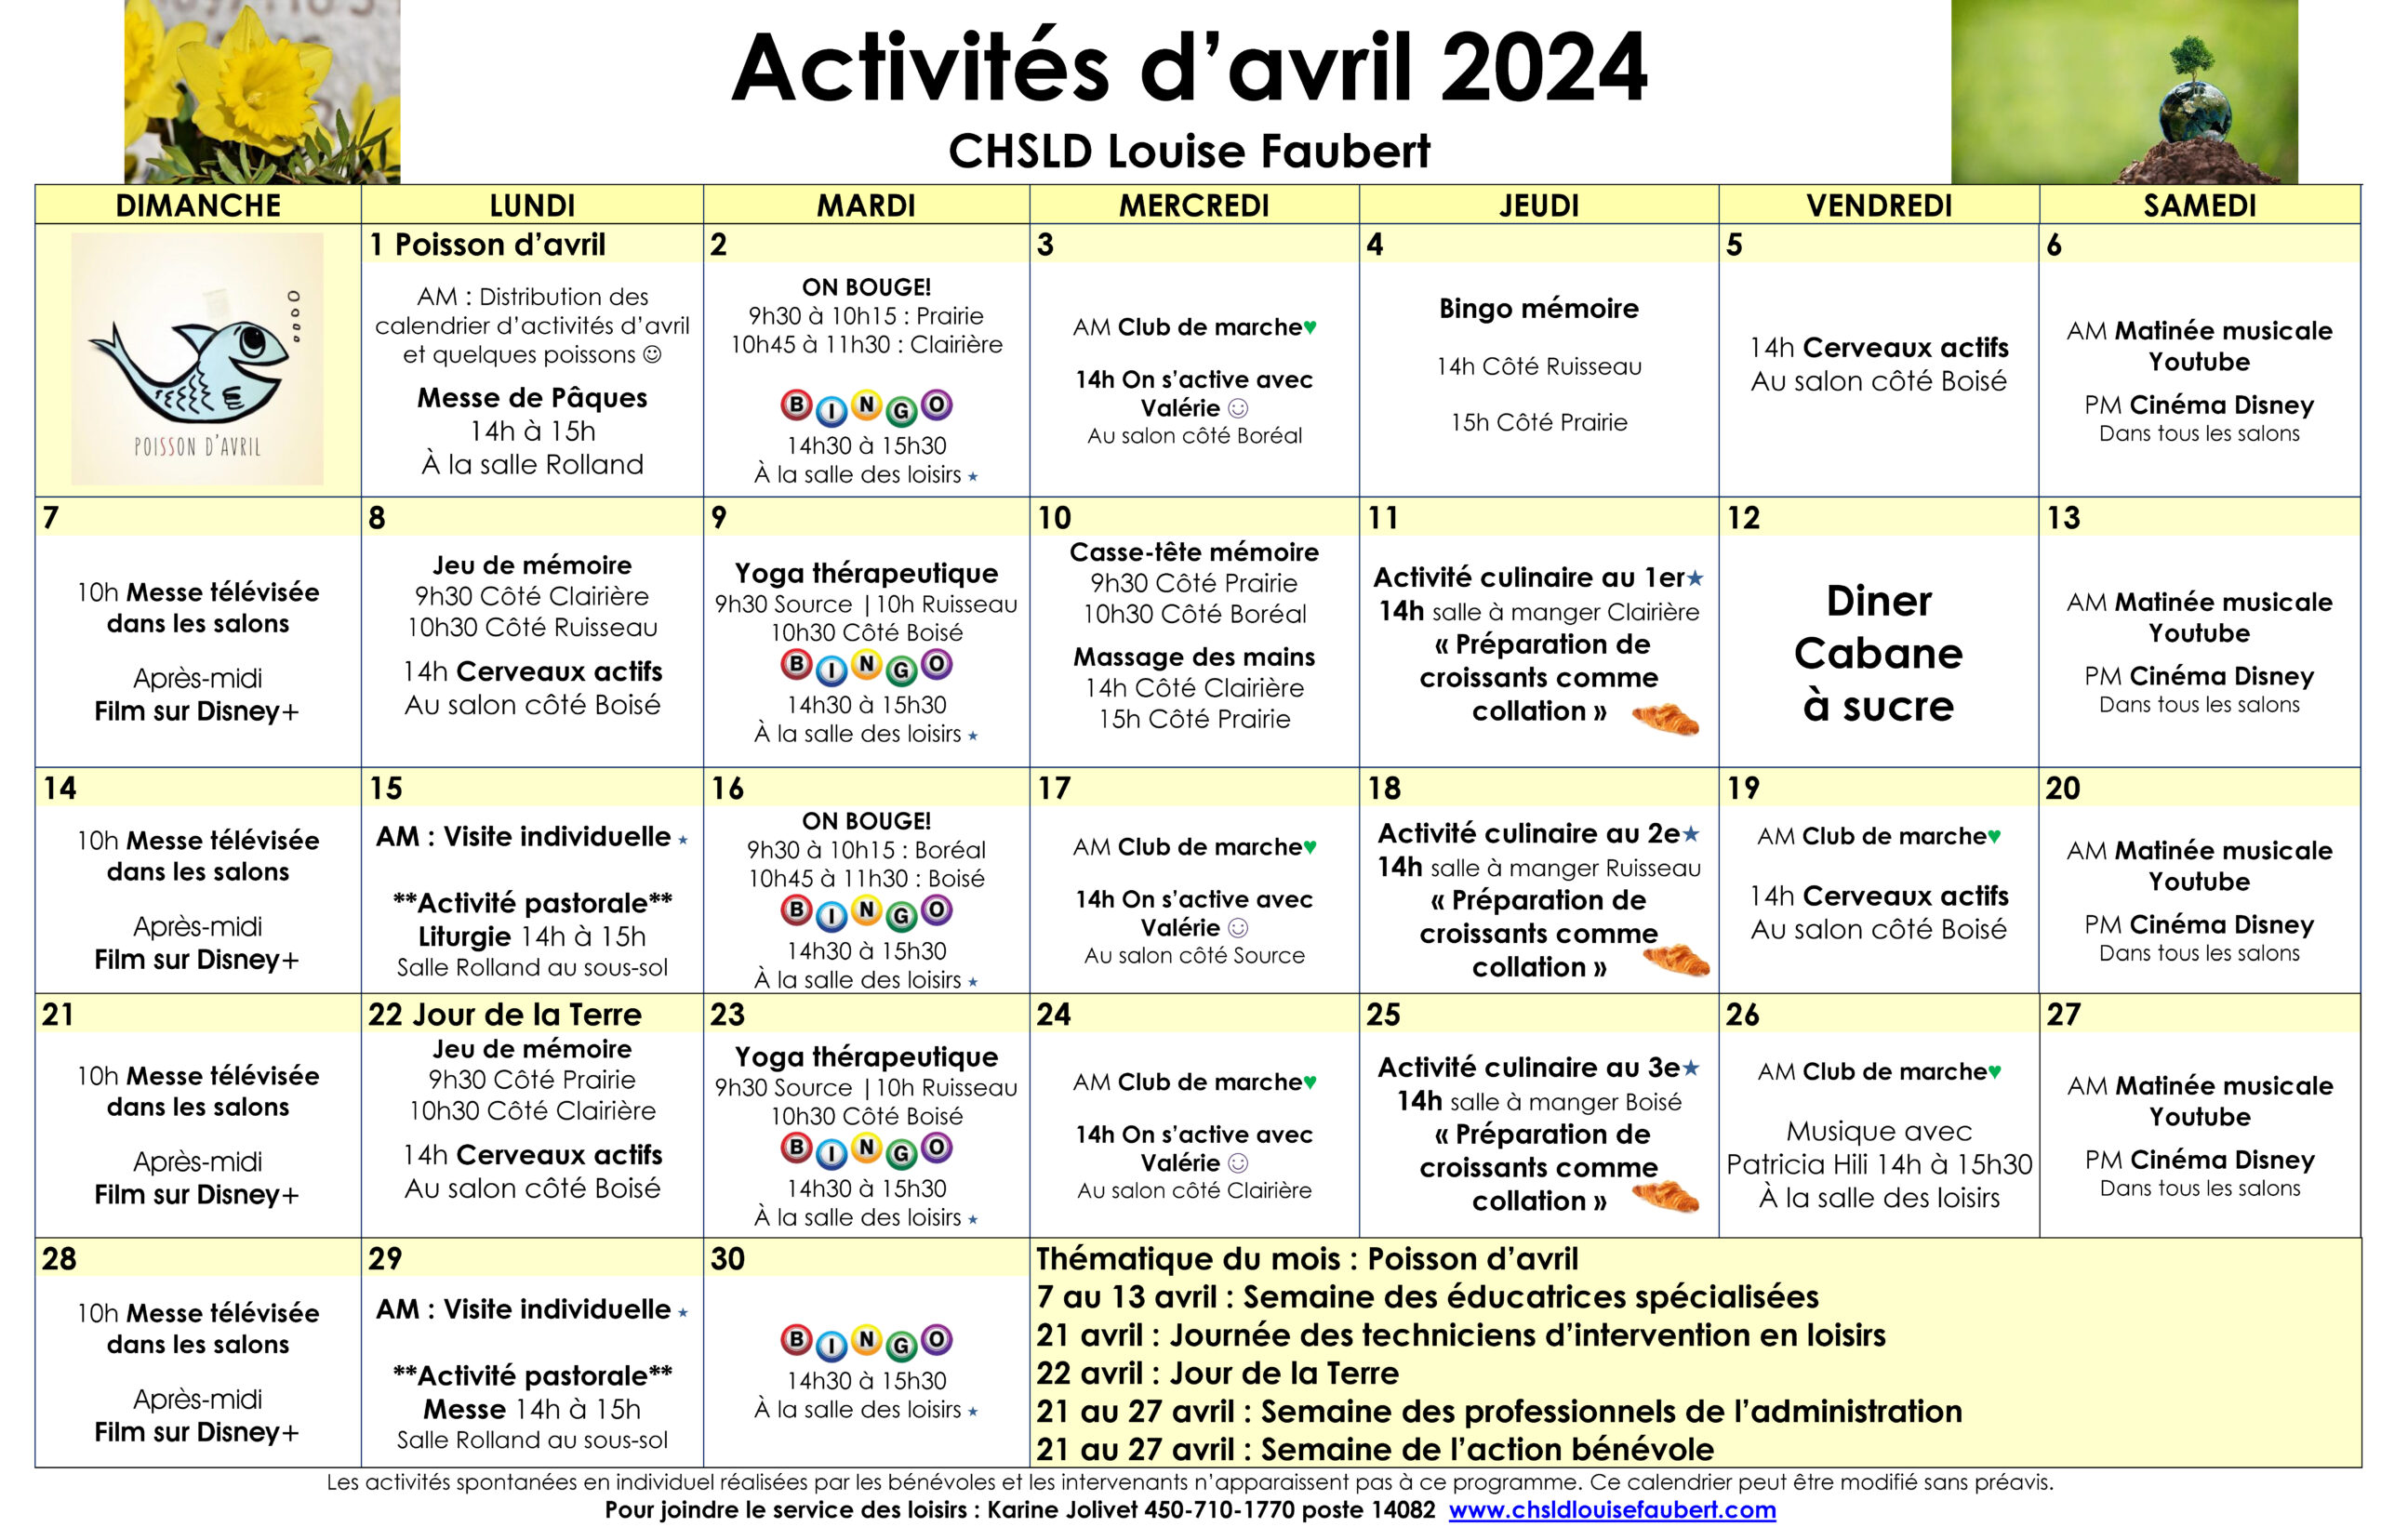 Calendrier des loisirs du mois d'avril 2024 pour les résidents du CHSLD Louise-Faubert